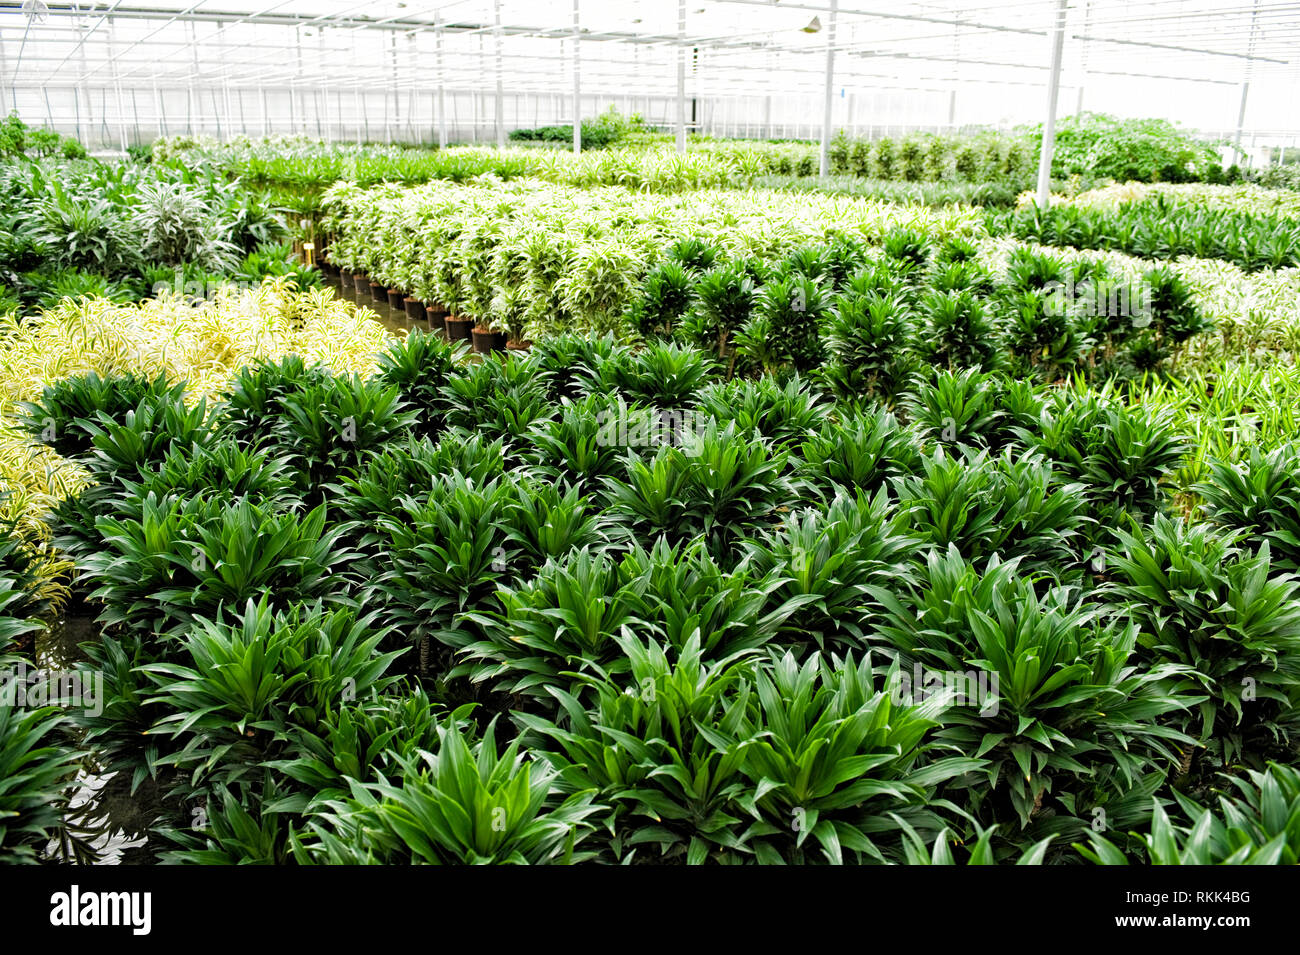 Gewaechshaus fuer Hydrokulturpflanzen das selber Energie erzeugt. Im Vordergrund stehen Dracaena Comacta Pflanzen. [ Stockfoto